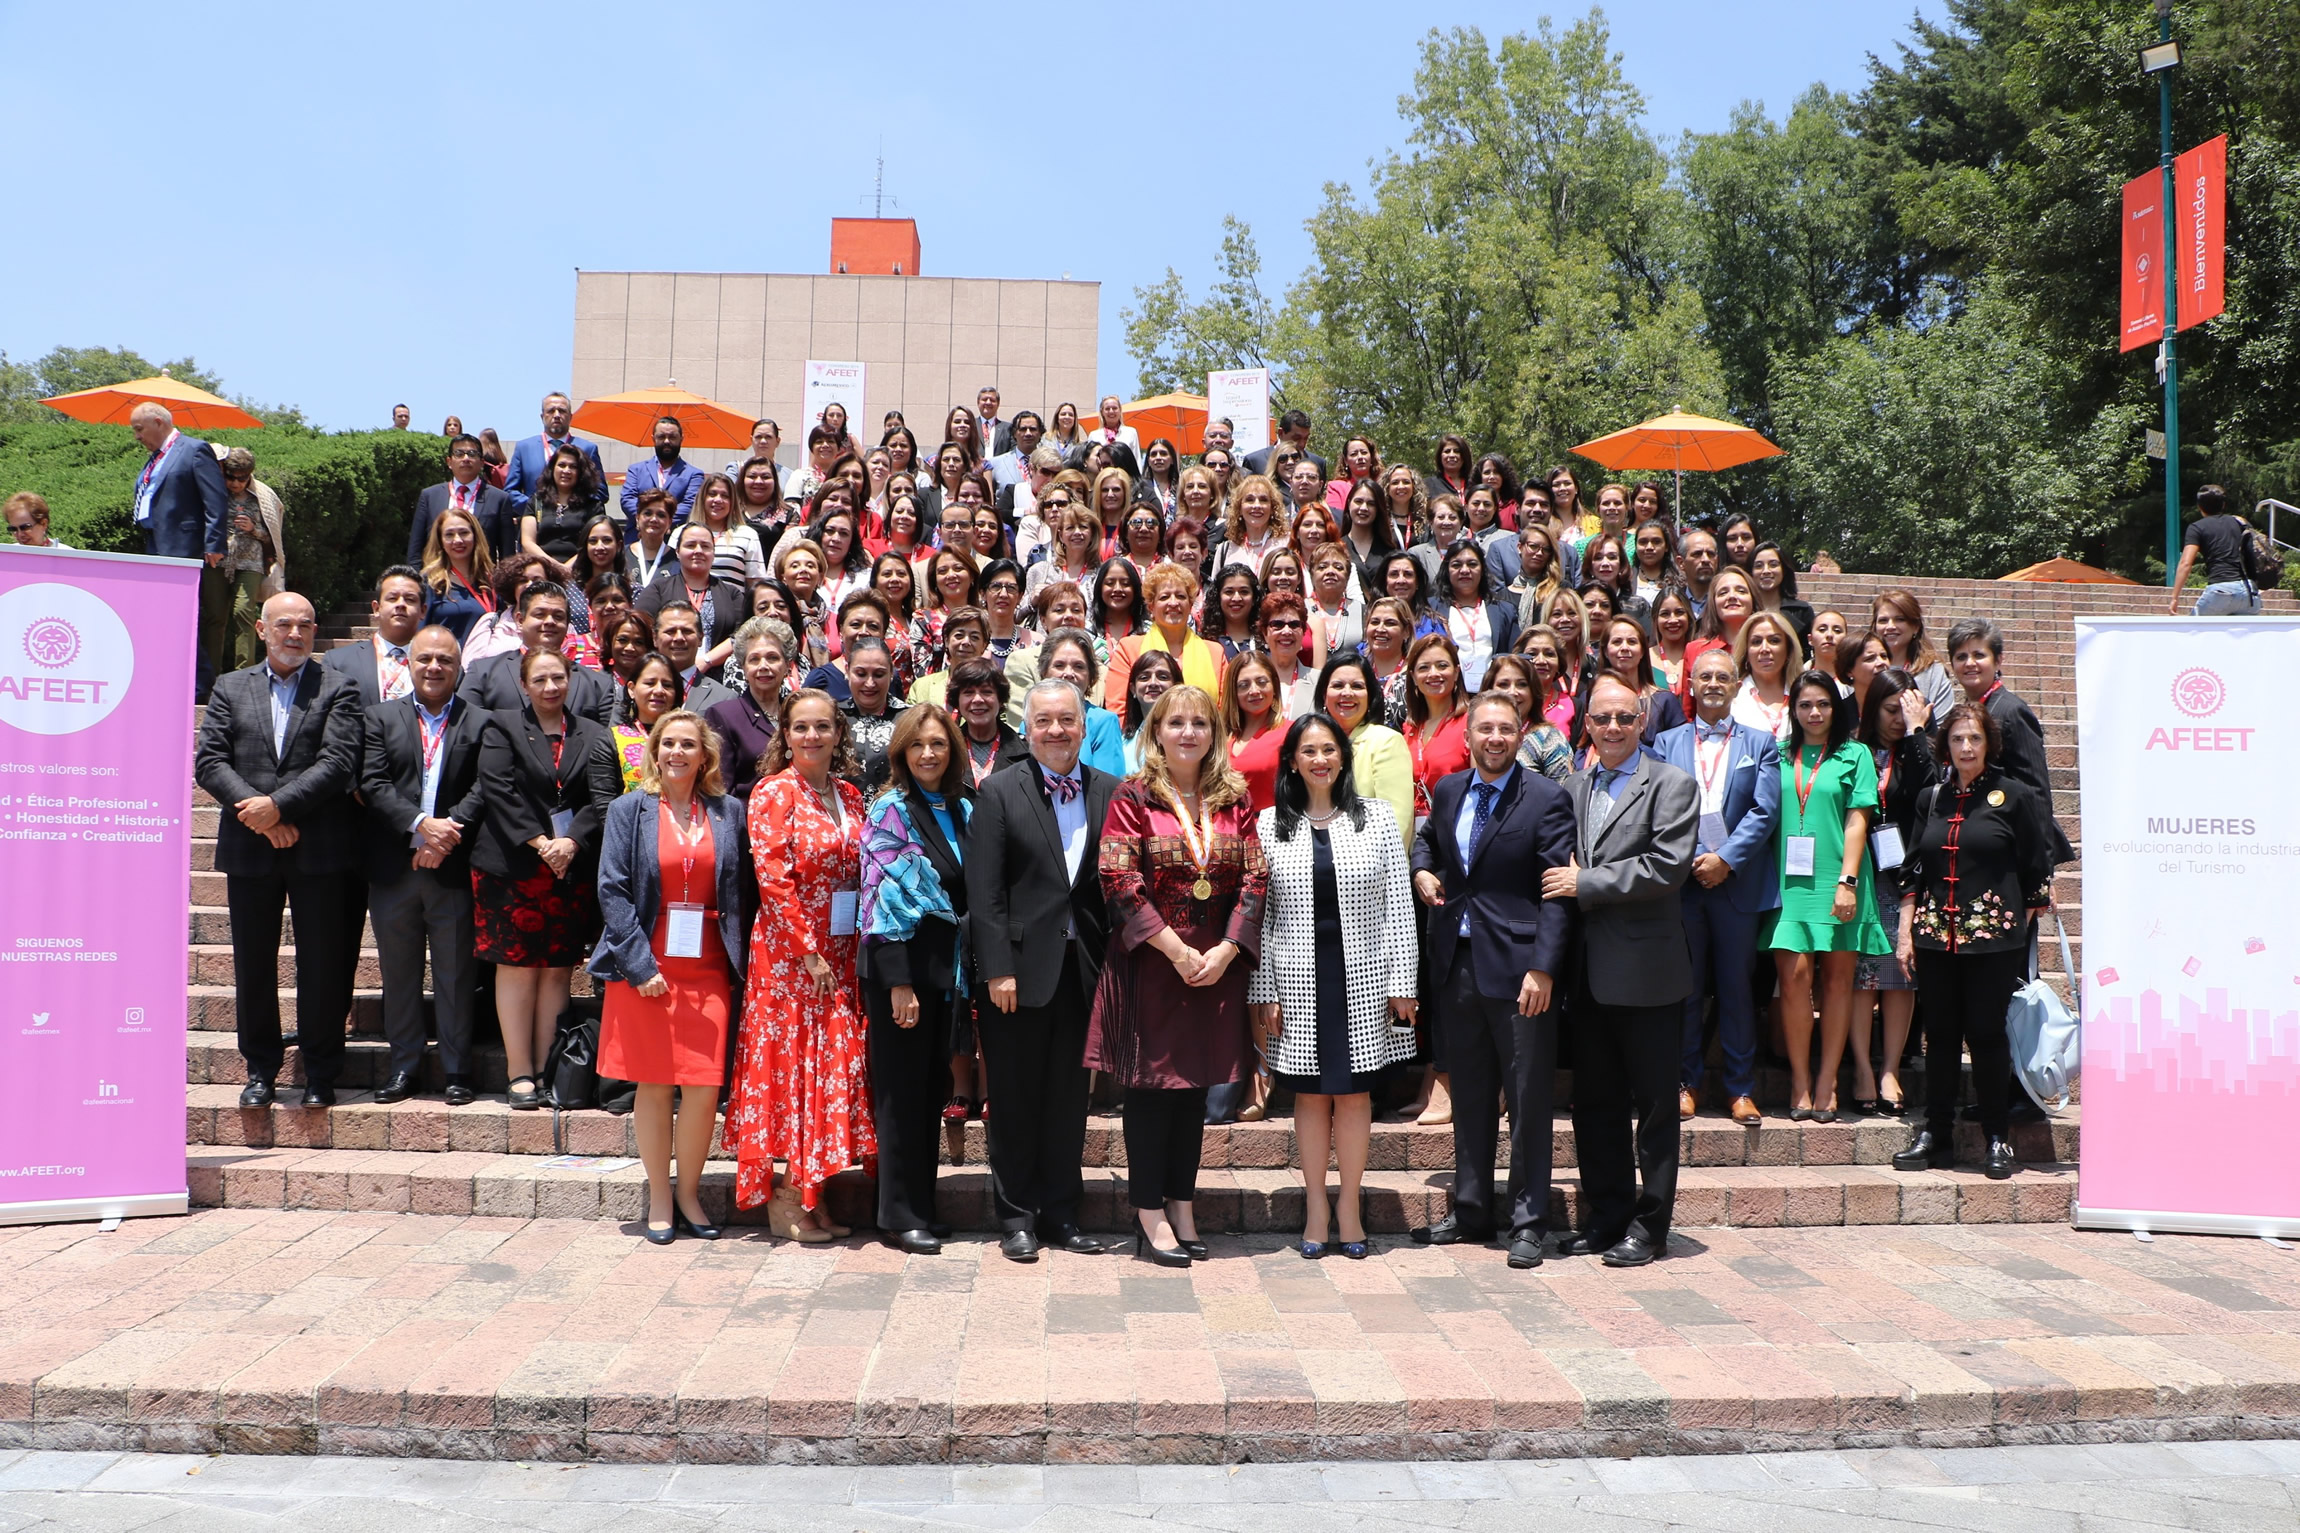 AFEET celebró con gran éxito su IV Congreso Internacional